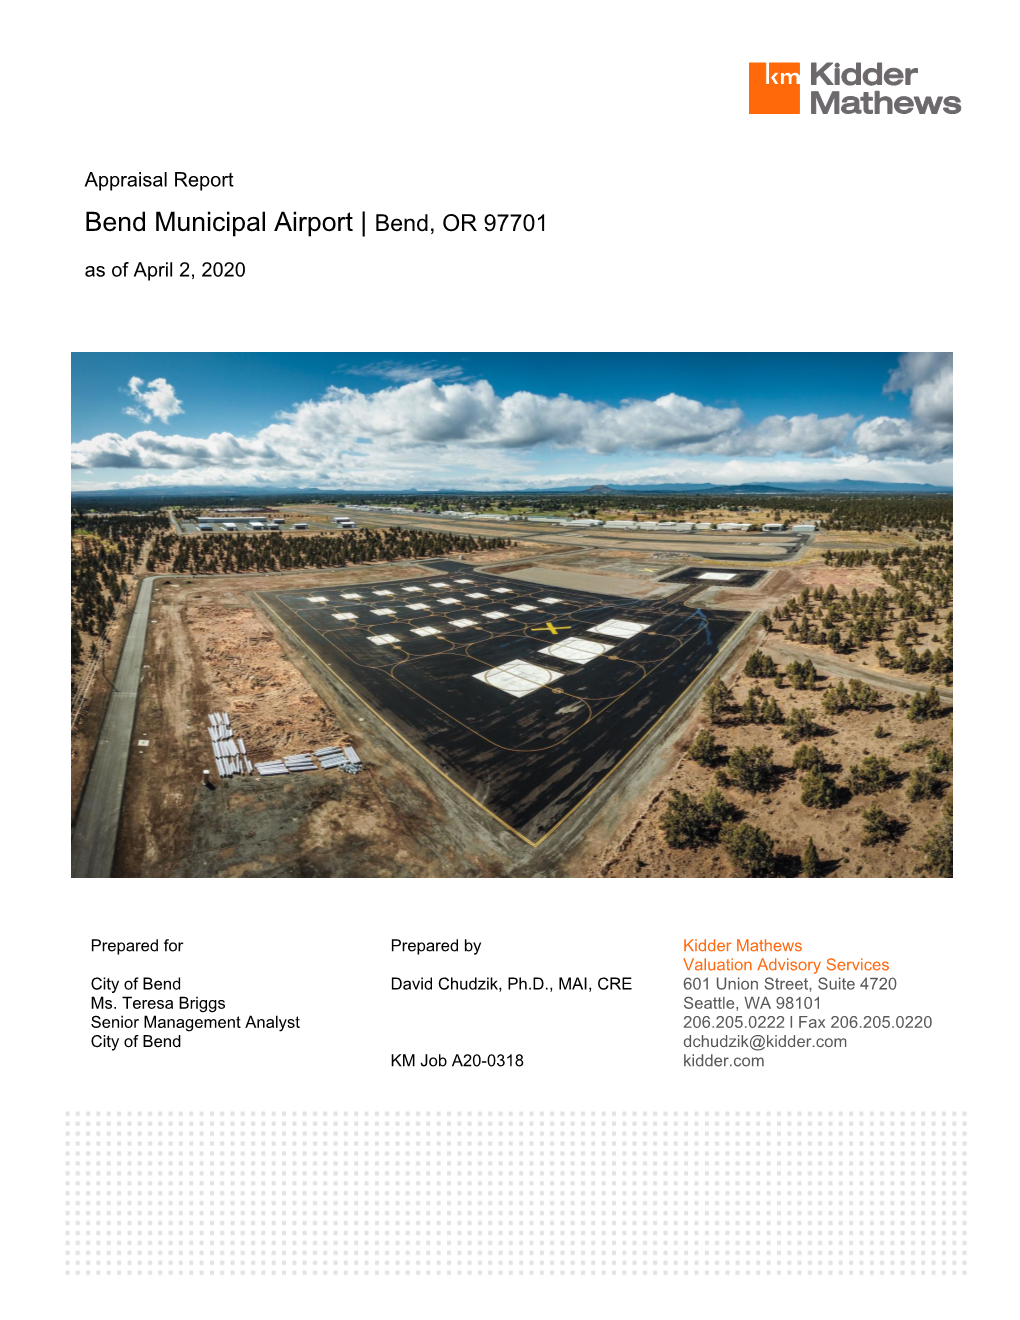 Bend Municipal Airport Appraisal 2020